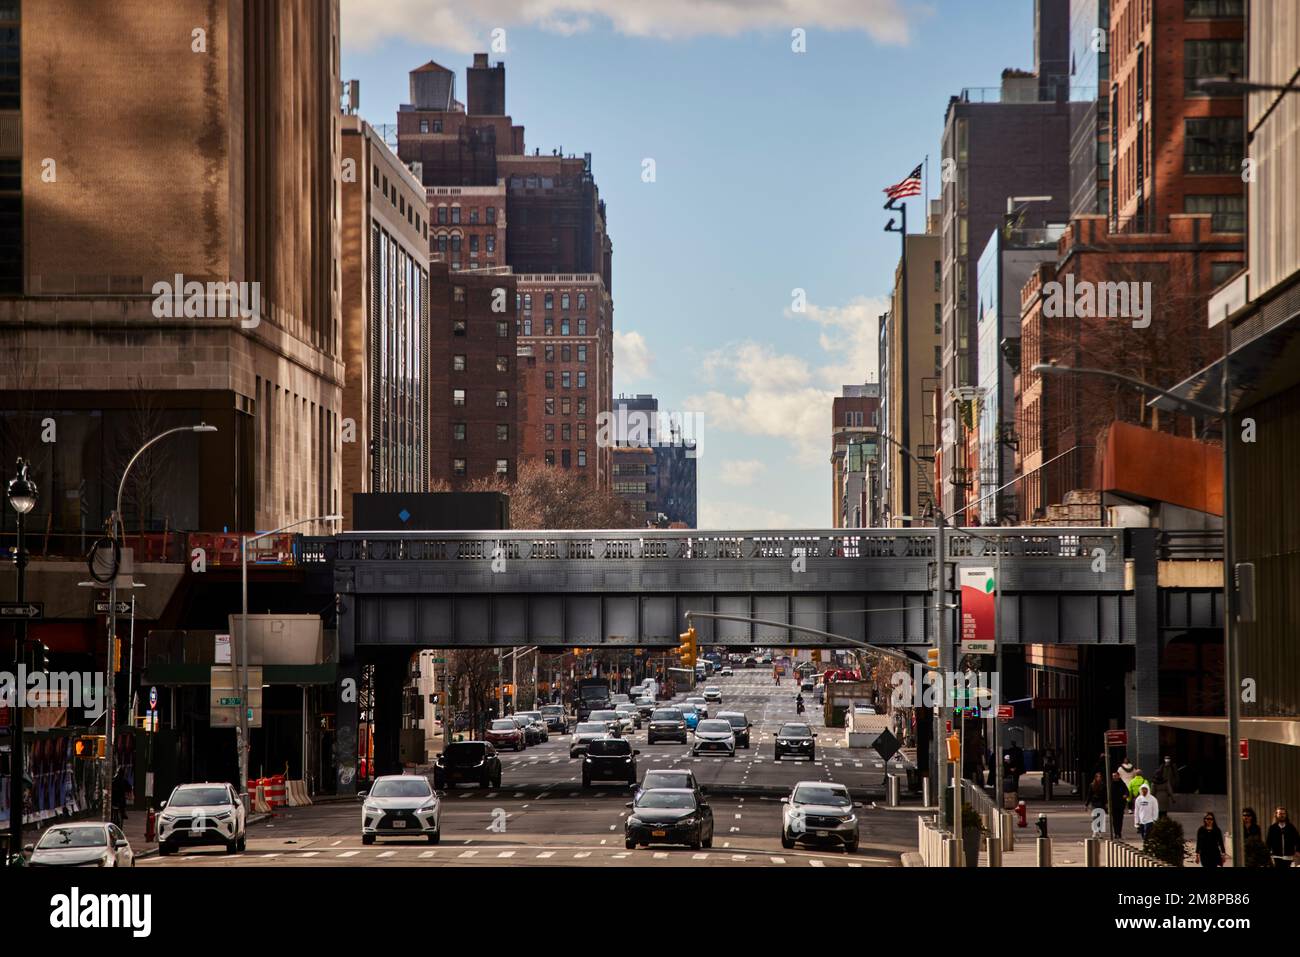 La ciudad de Nueva York Manhattan 34th Street mirando hacia abajo 10th Avenue y el High Line Foto de stock